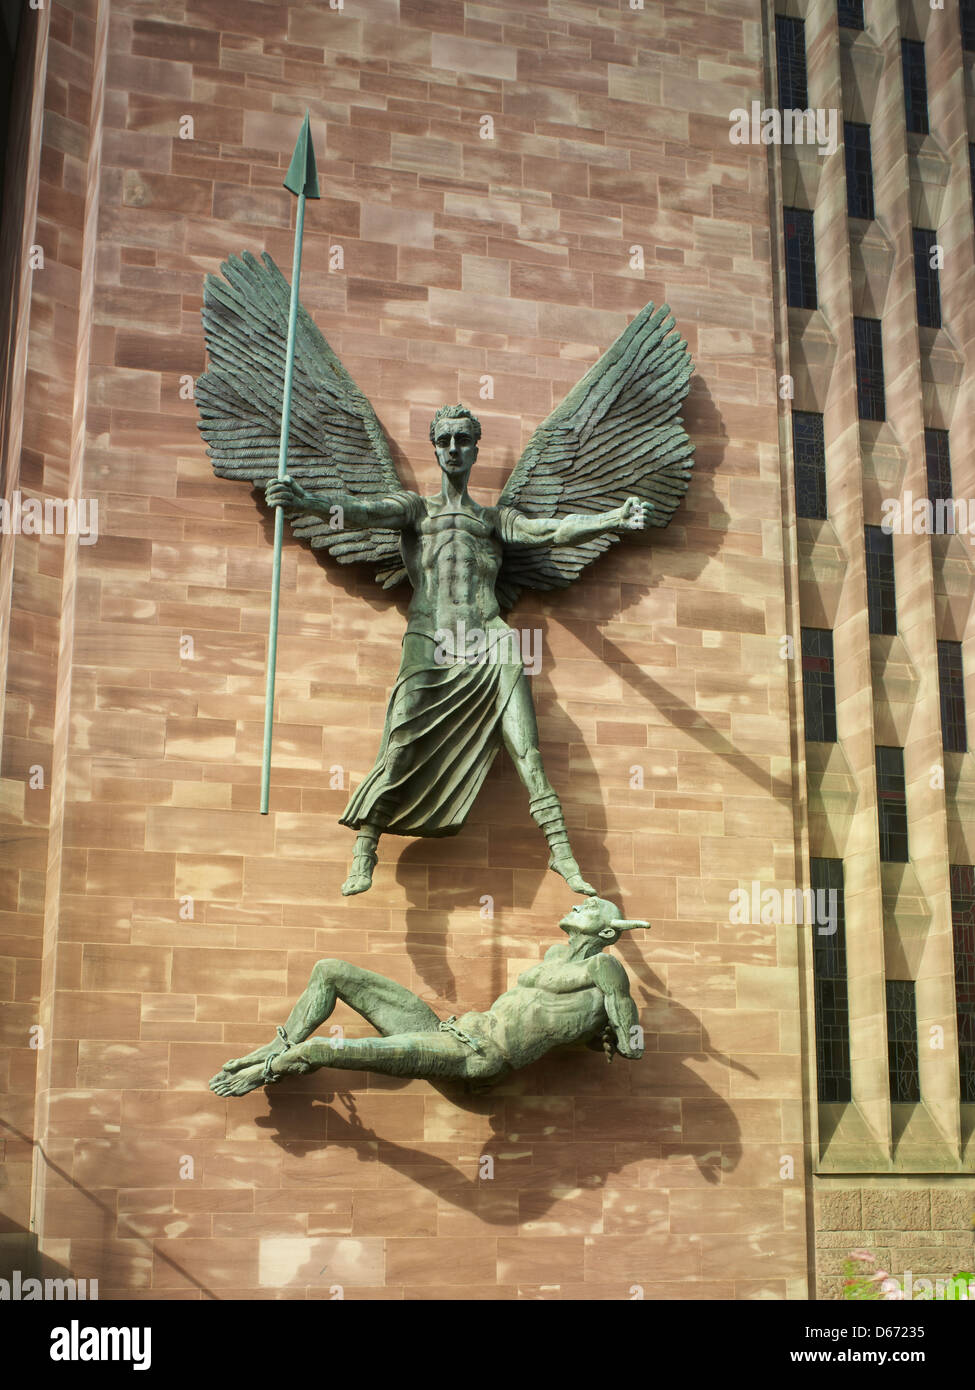 Coventry Cattedrale di St Michael: gigantesca statua in bronzo di San Michele soggiogare il diavolo dello scultore Jacob Epstein Foto Stock